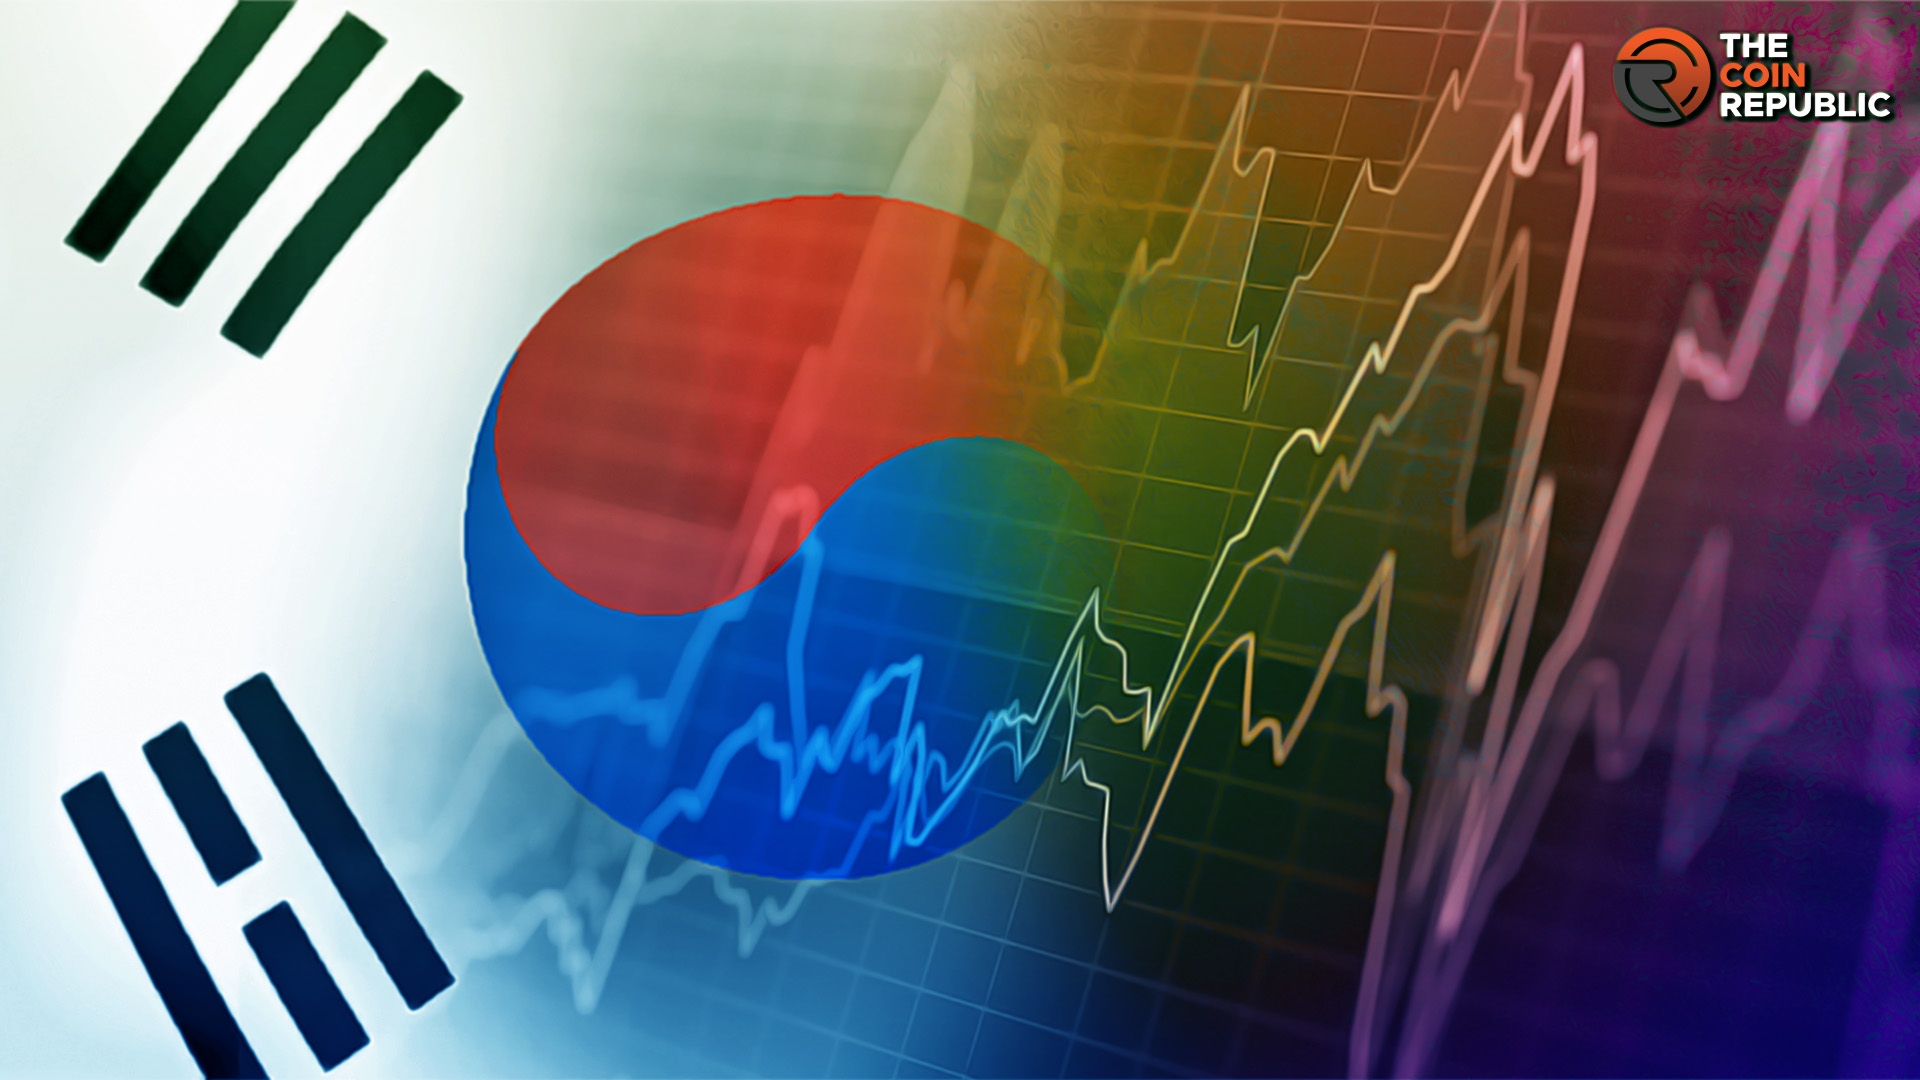 암울한 경제 상황 속에서 한국이 암호화폐를 바라보고 있습니까?